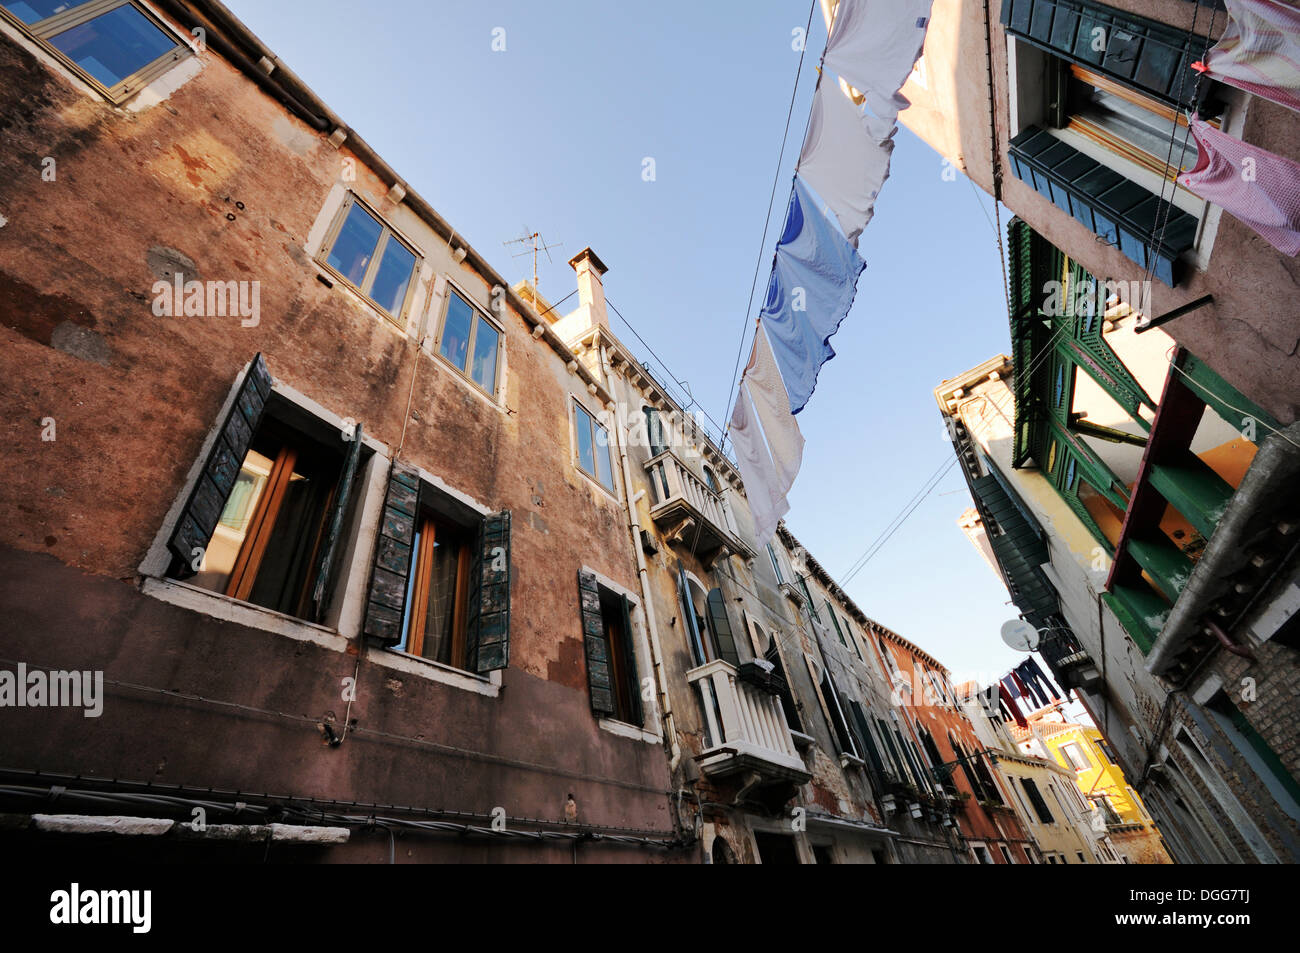 Häuser stehen dicht beieinander mit Wäscheständer an Wäscheleinen gespannt zwischen ihnen, Castello, Venedig, Venezia, Veneto, Italien Stockfoto